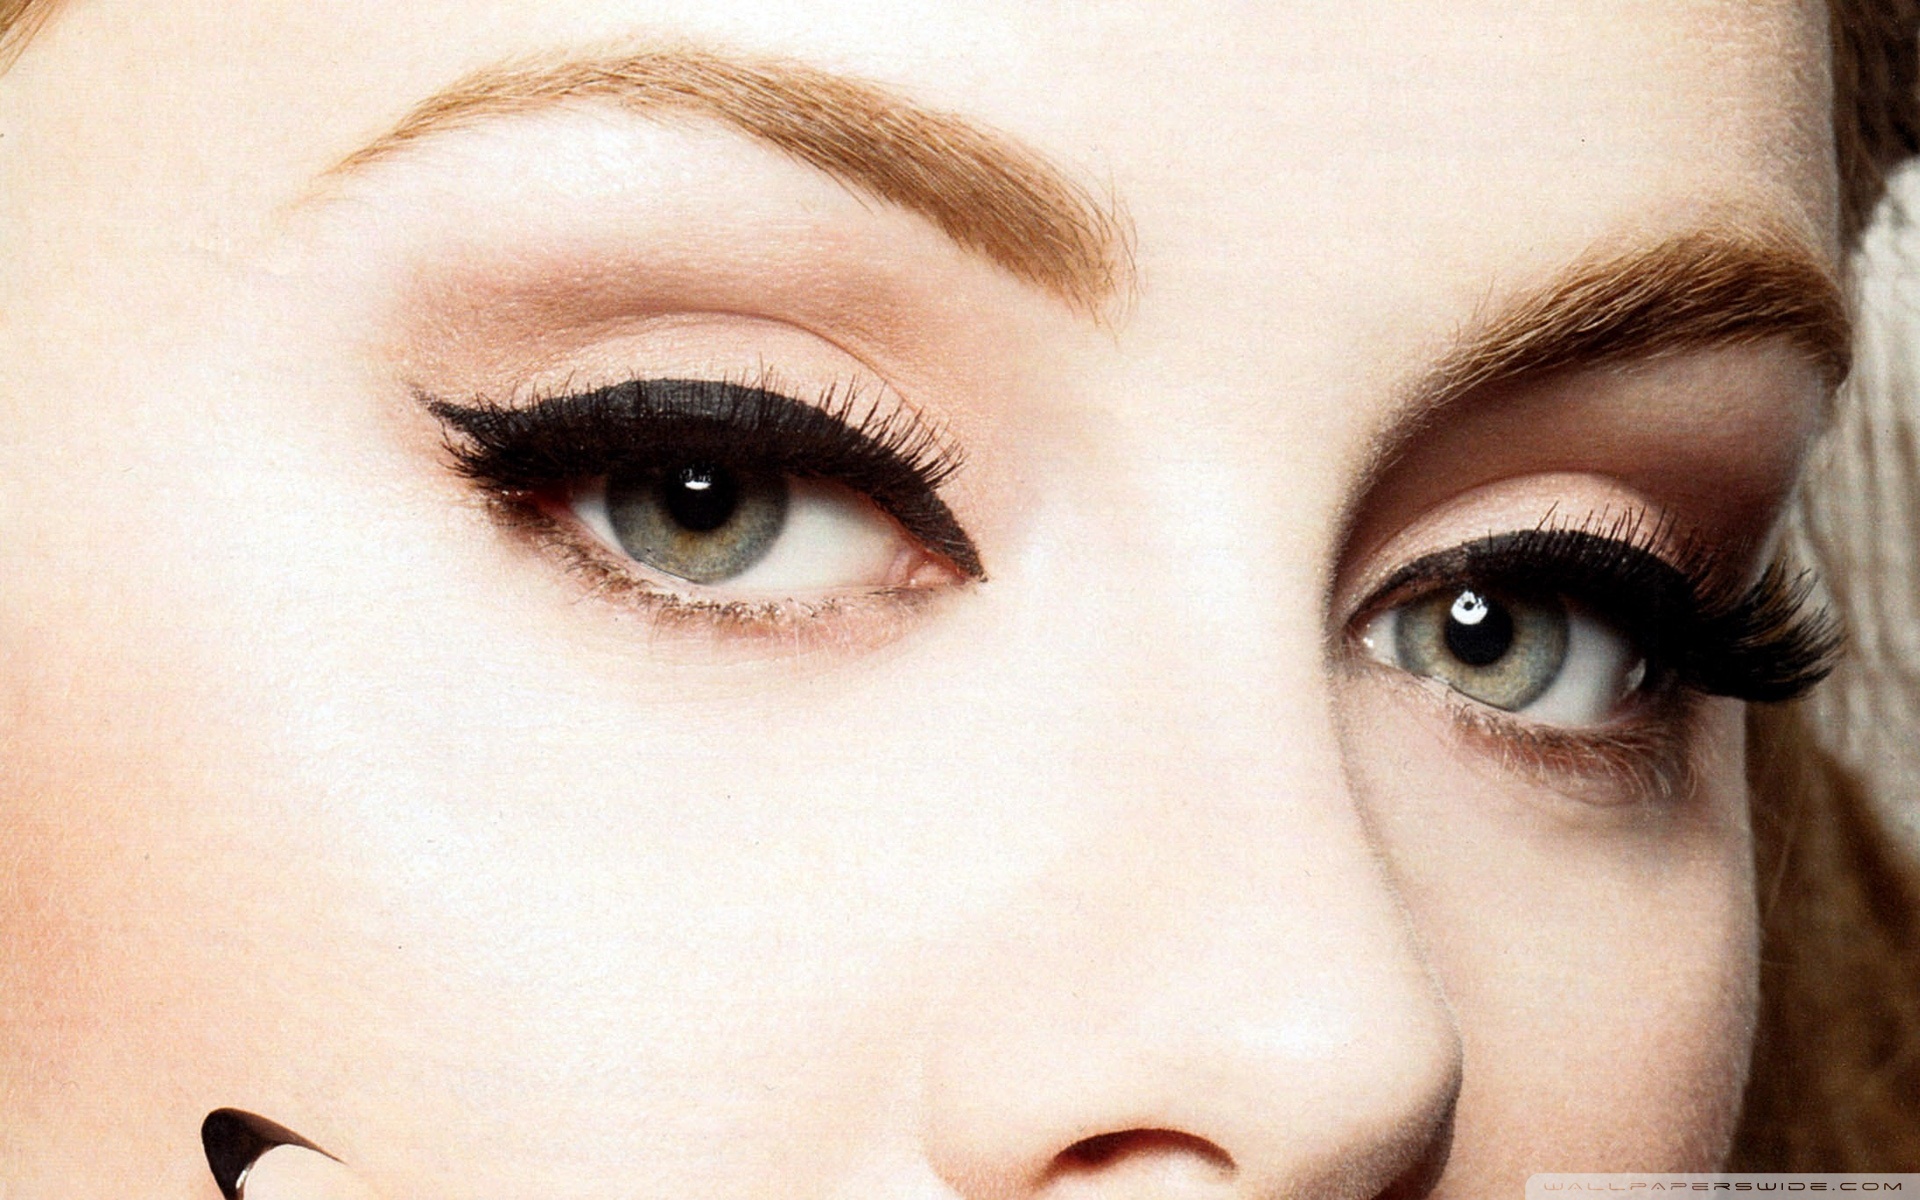 Adele's Eyes Wallpaper Full HD [1920x1200] - Free wallpaper full ...